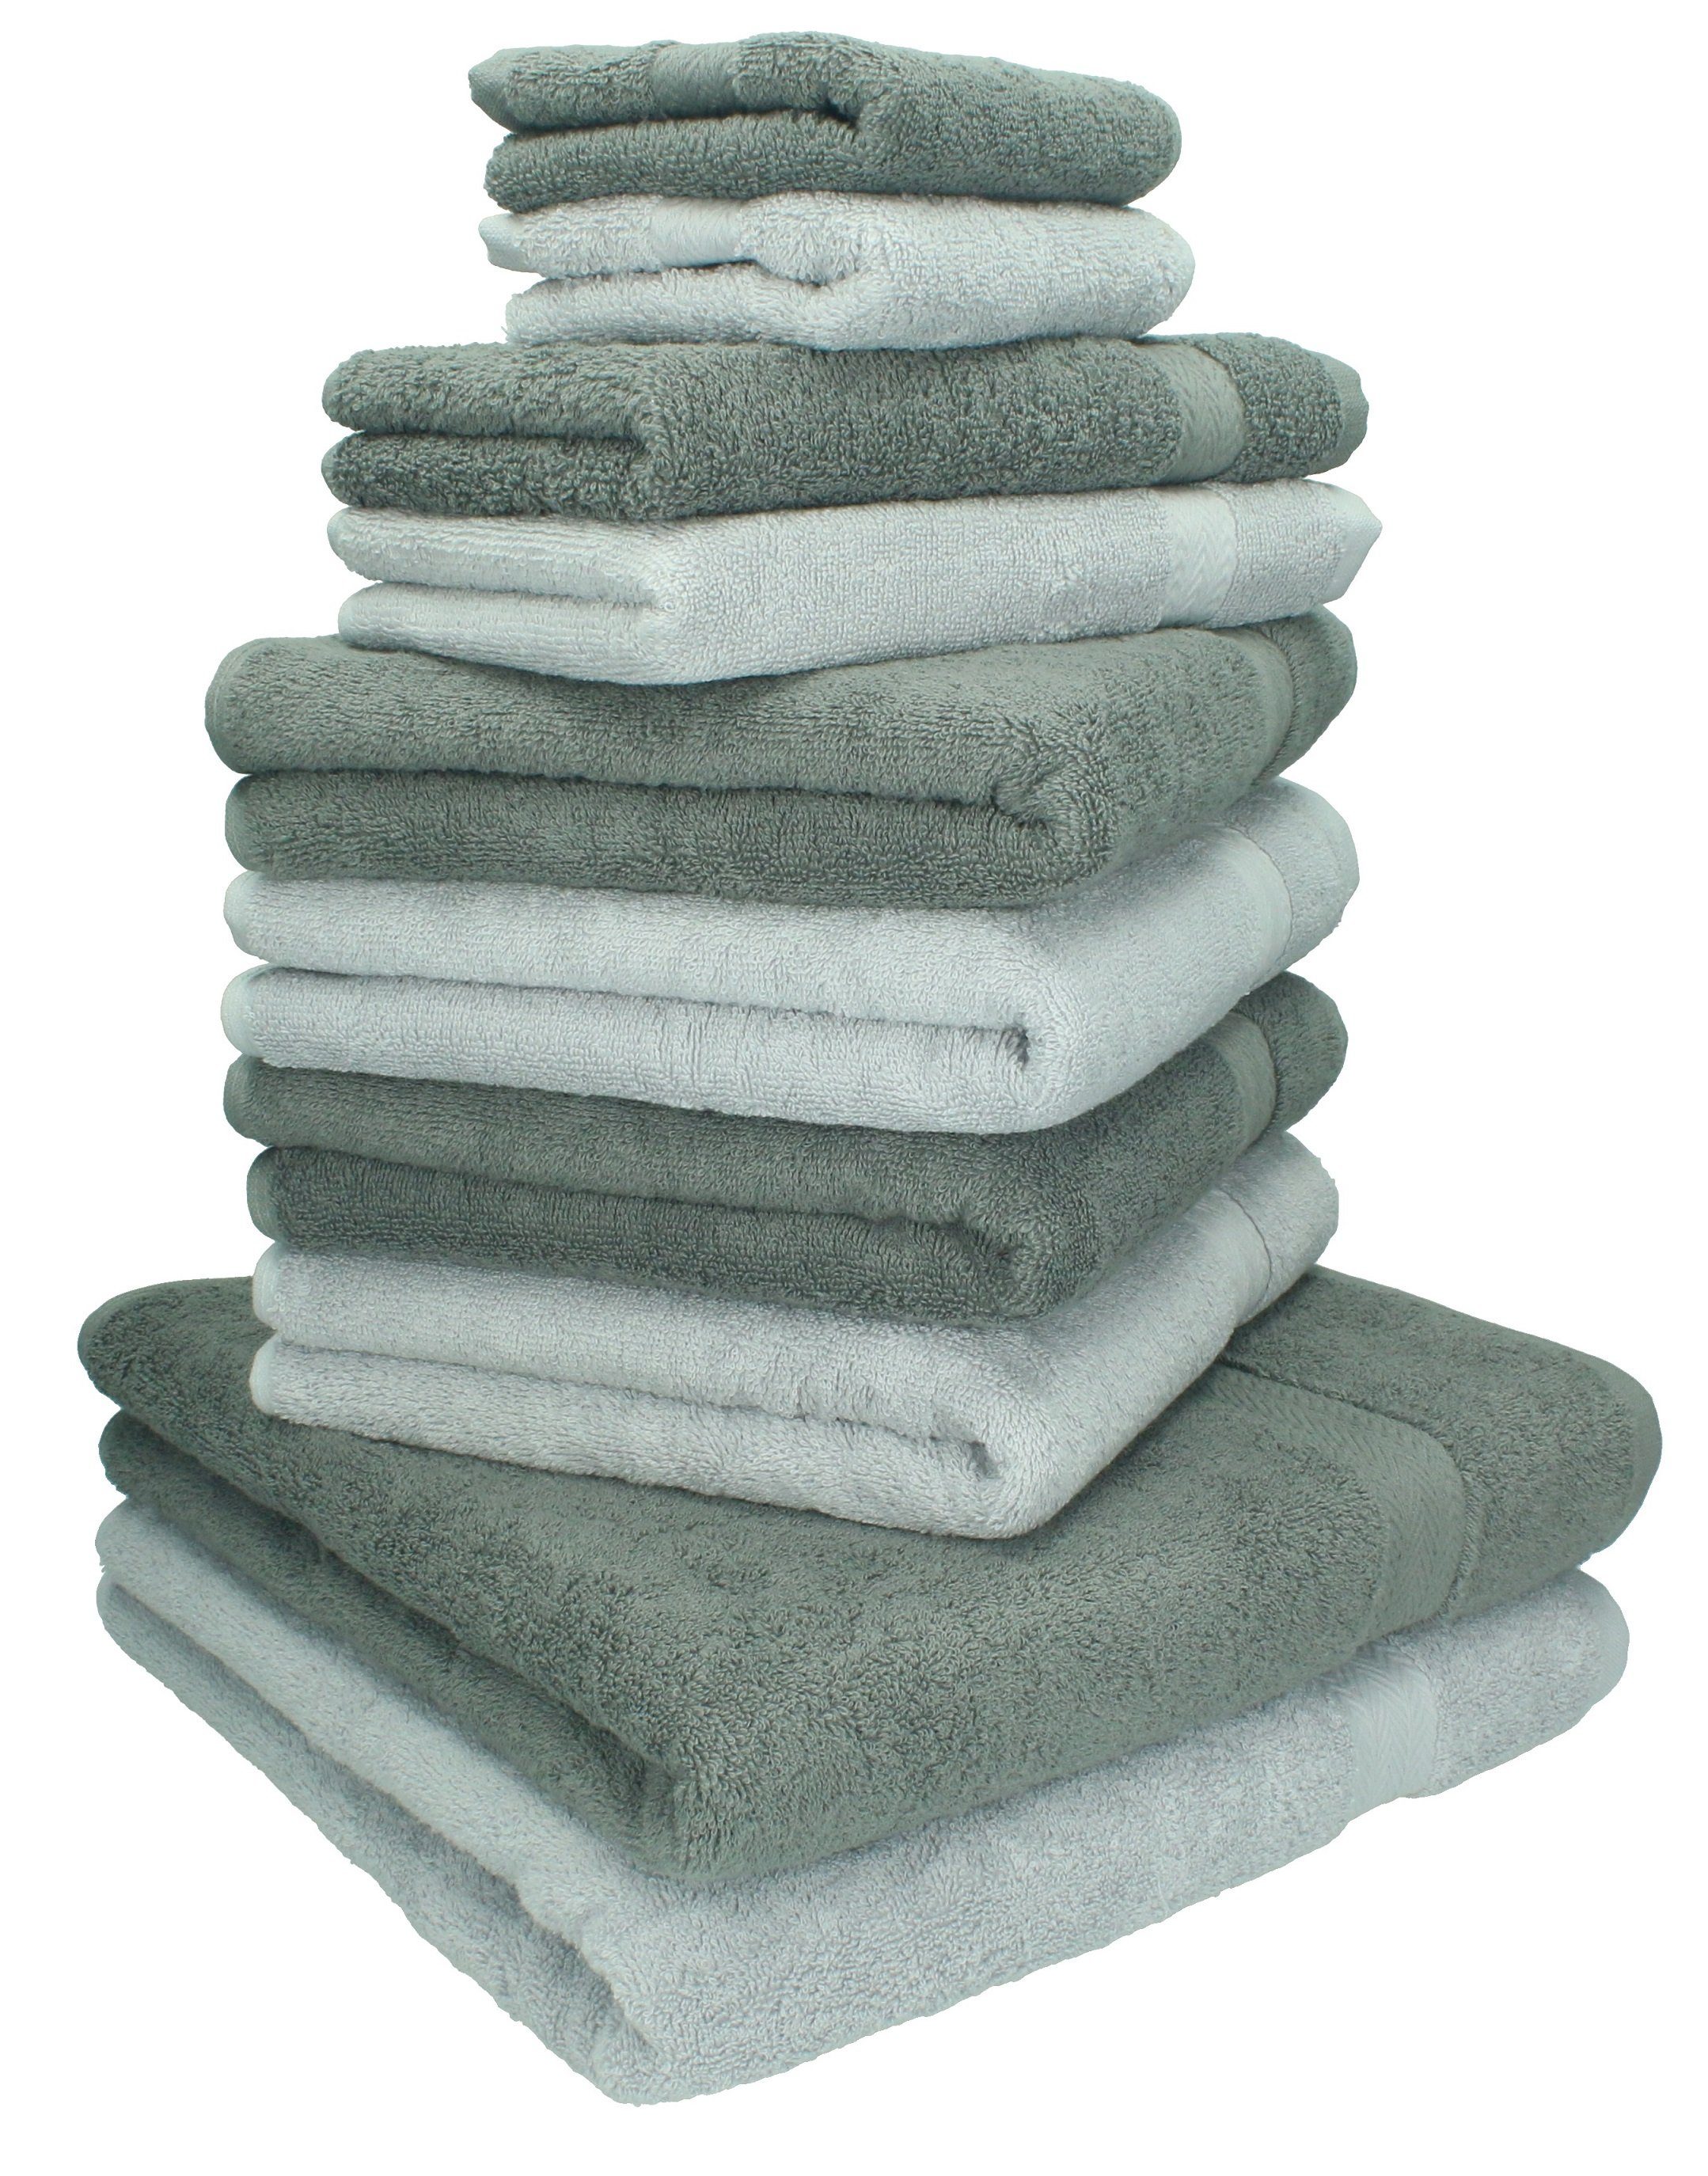 Betz Handtuch Set 10-TLG. Handtuch-Set Classic Farbe anthrazit und silbergrau, 100% Baumwolle